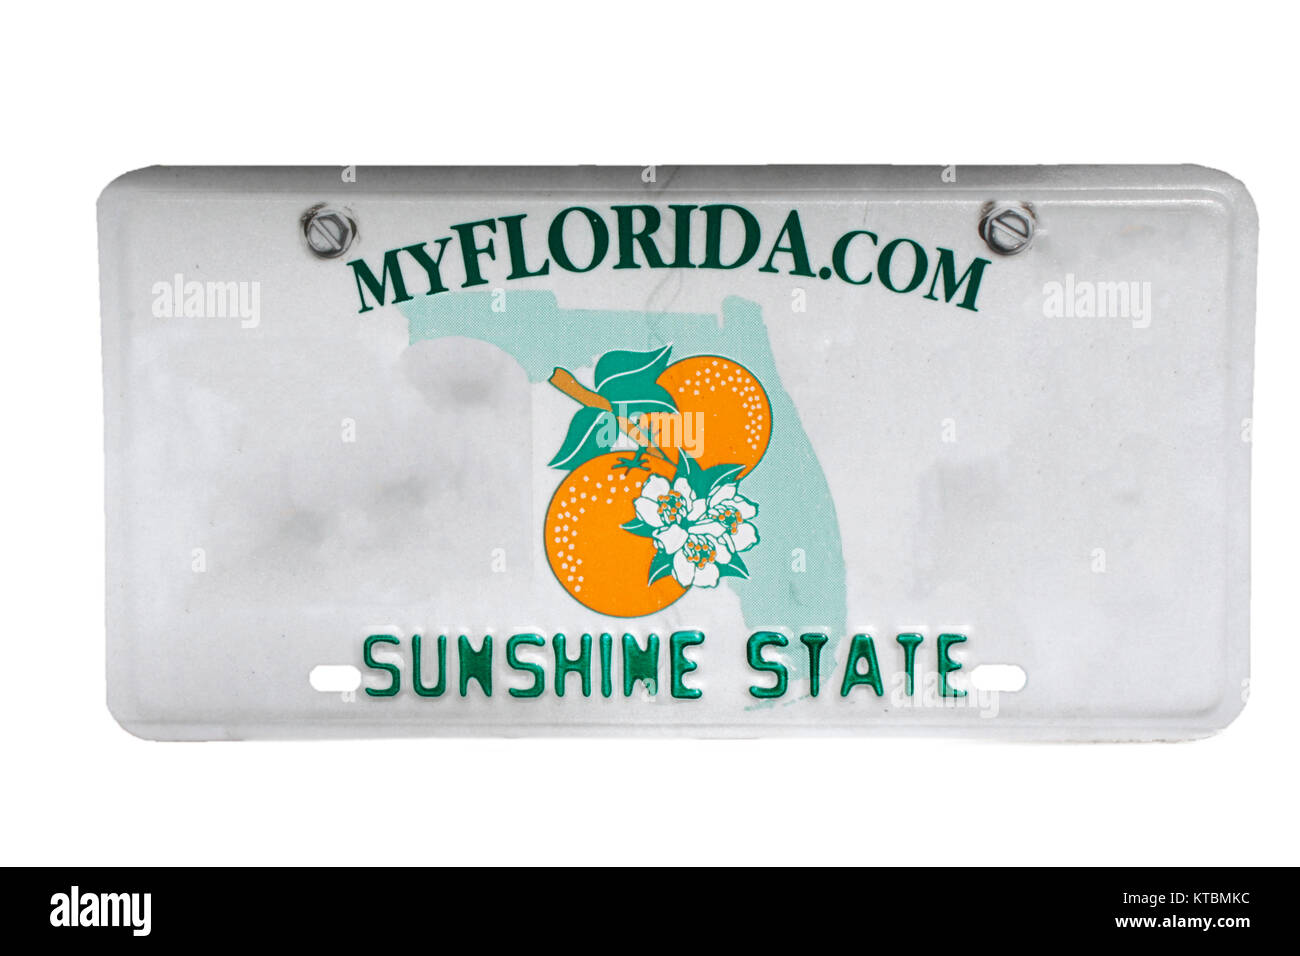 Blank Florida License Plate Template digiscrapru